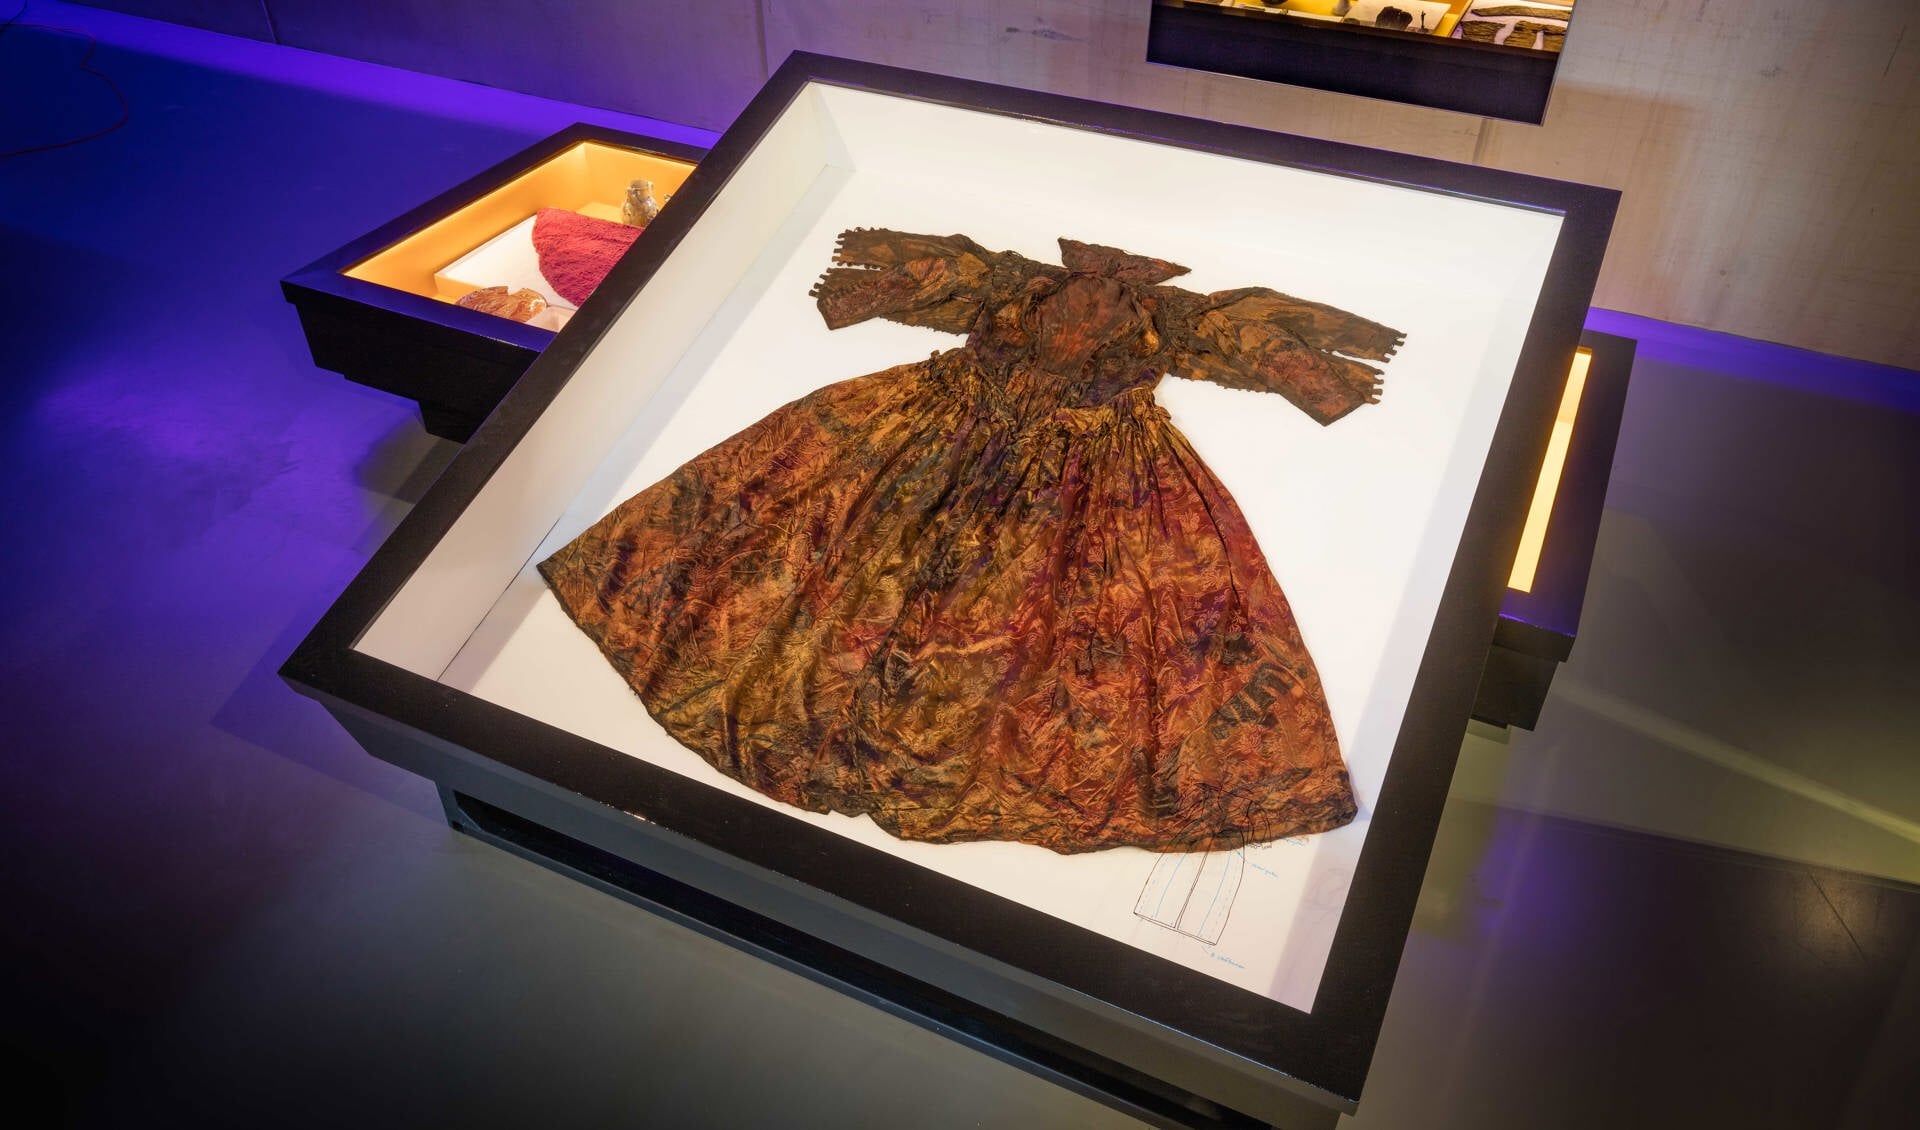 De koninklijke jurk, het pronkstuk van de Palmhoutwrak-collectie